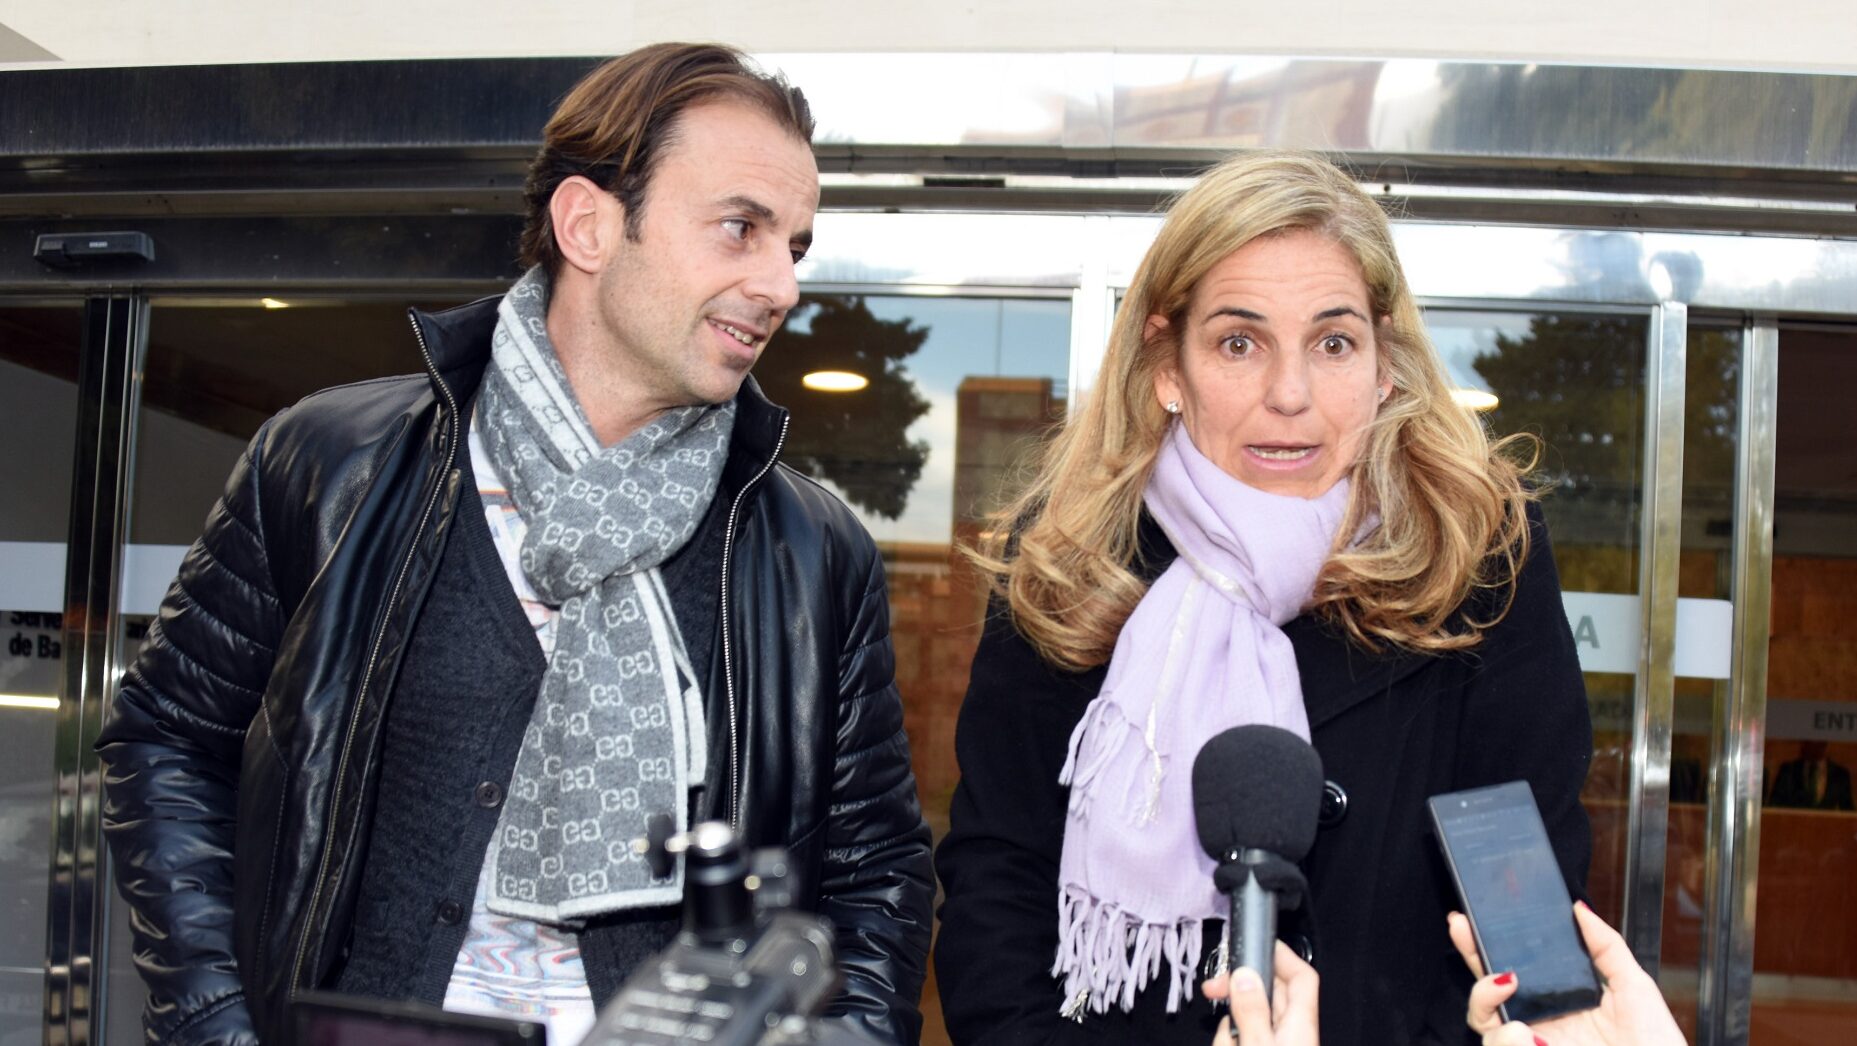 Arantxa Sánchez Vicario y su exmarido Josep Santacana se enfrentan a cuatro años de cárcel y más de seis millones de euros de multa